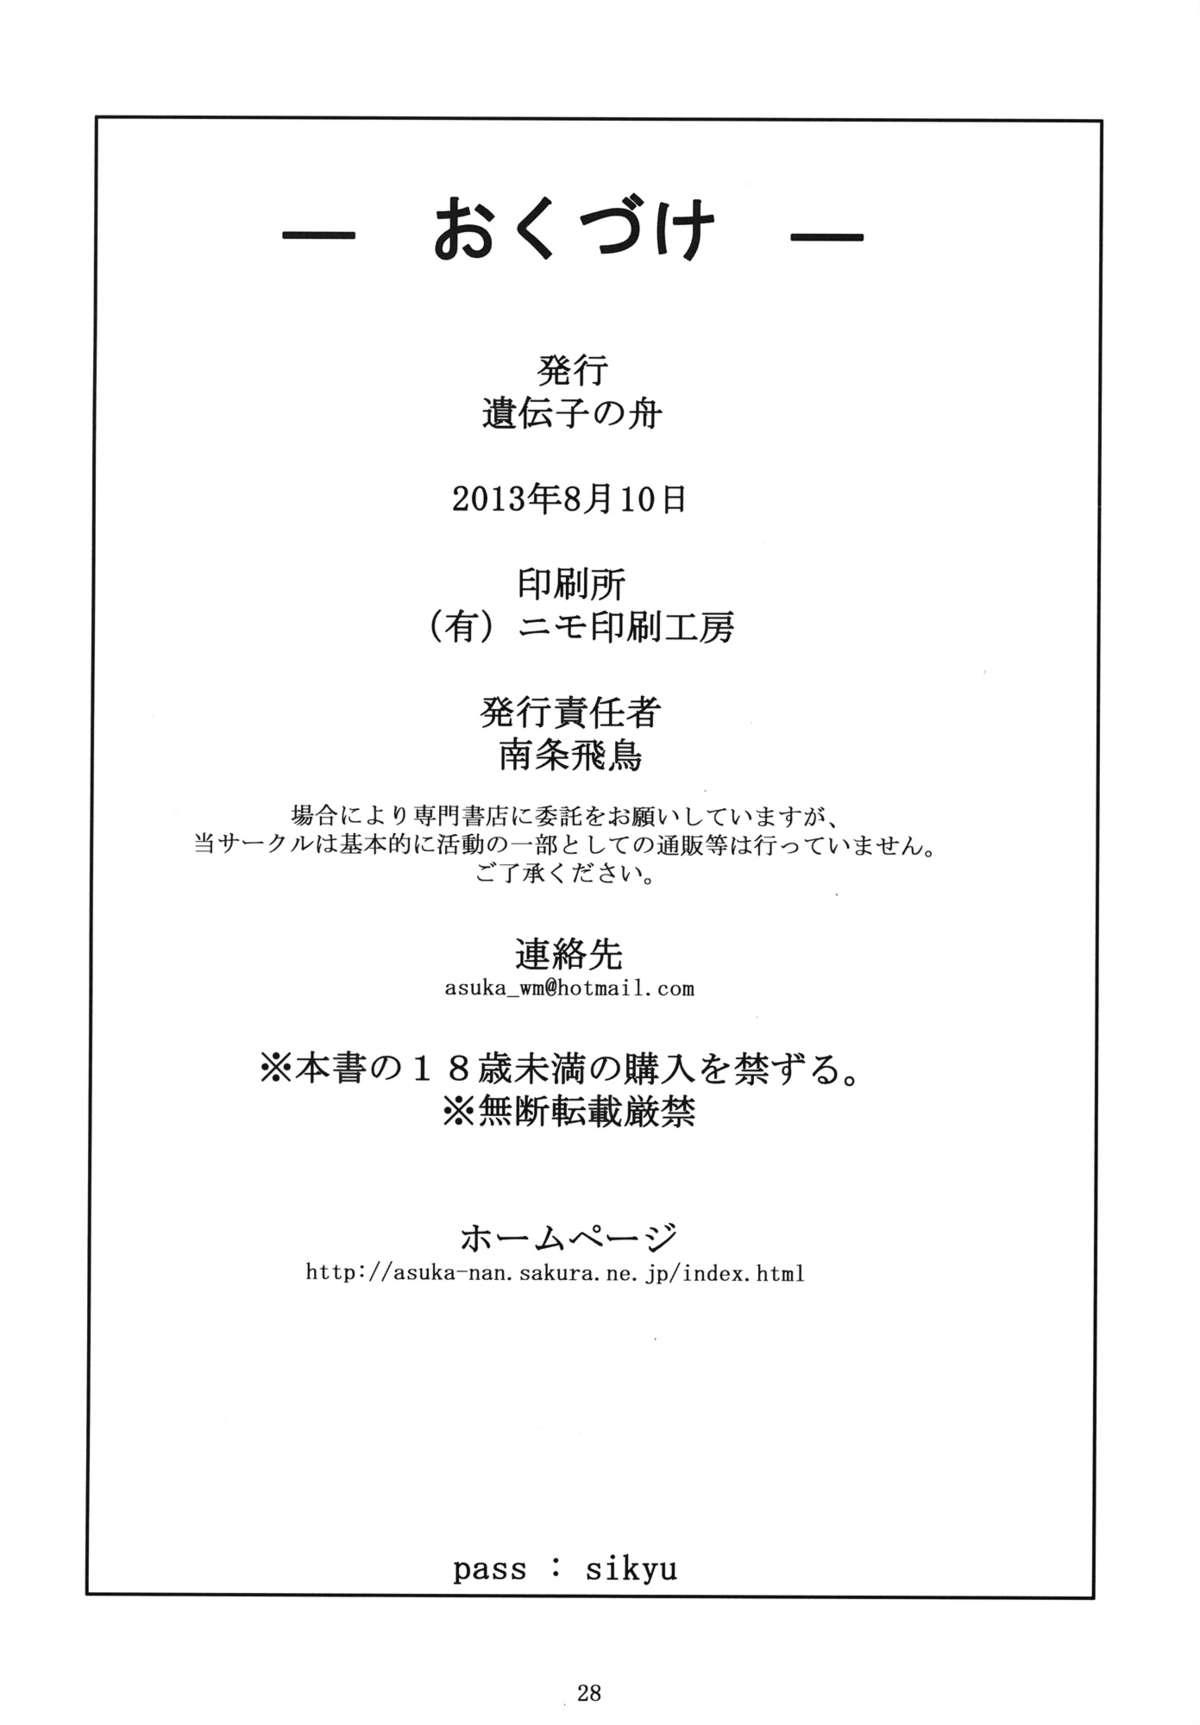 Screaming (C84) [Idenshi no Fune (Nanjou Asuka)] R-R ~After~ 02 (Chousoku Henkei Gyrozetter) - Chousoku henkei gyrozetter Hot Wife - Page 29